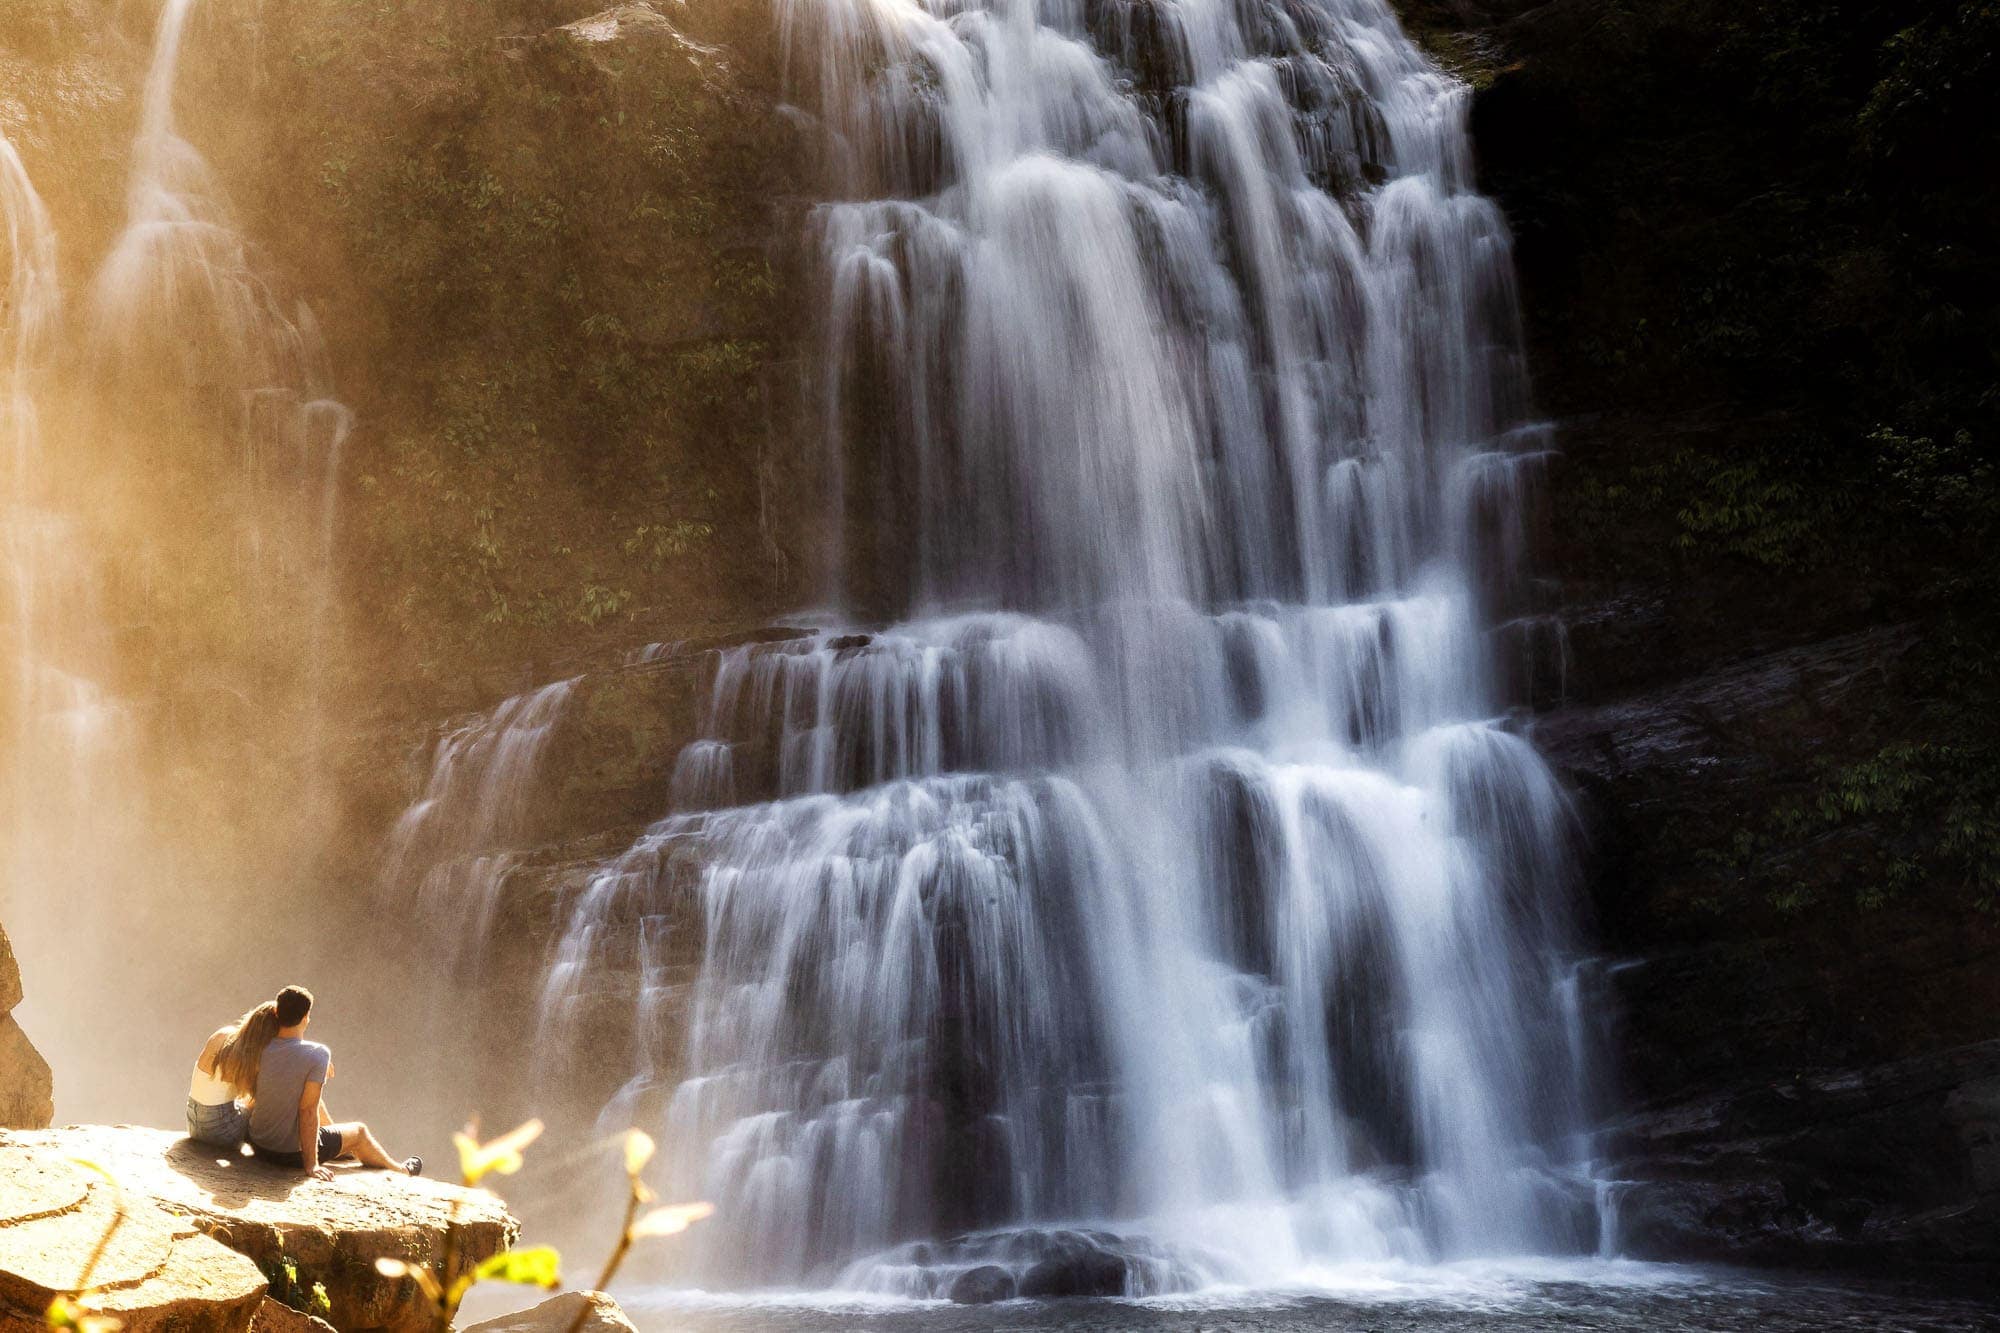 photos at waterfall